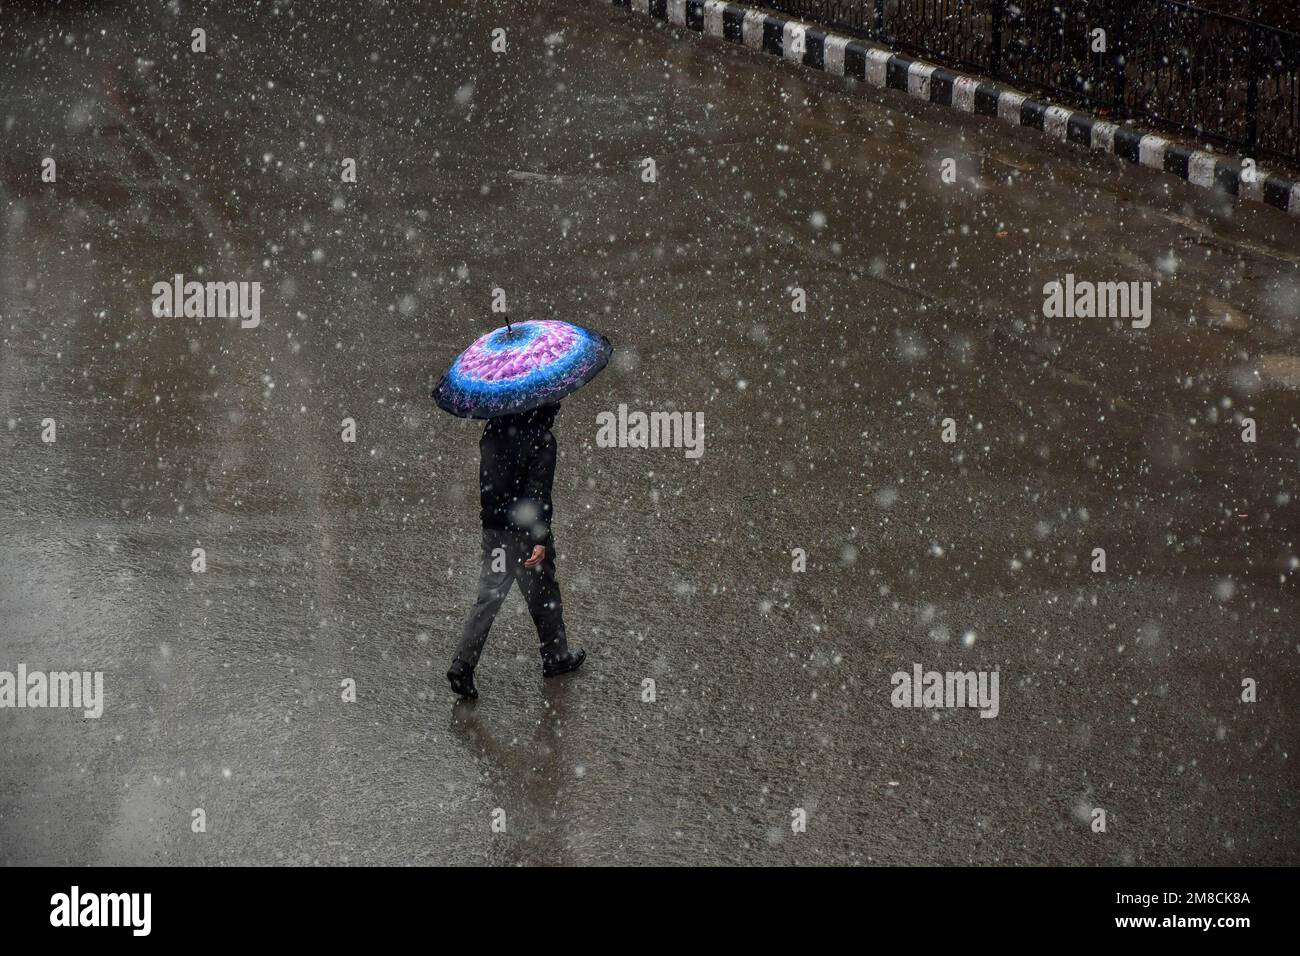 Un uomo tiene un ombrello mentre cammina per la strada durante le nevicate. Parti della valle di Kashmir compreso Srinagar ha ricevuto nevicate che portano alla chiusura della vitale Srinagar-Jammu autostrada nazionale e la cancellazione delle operazioni di volo, funzionari qui ha detto. Foto Stock